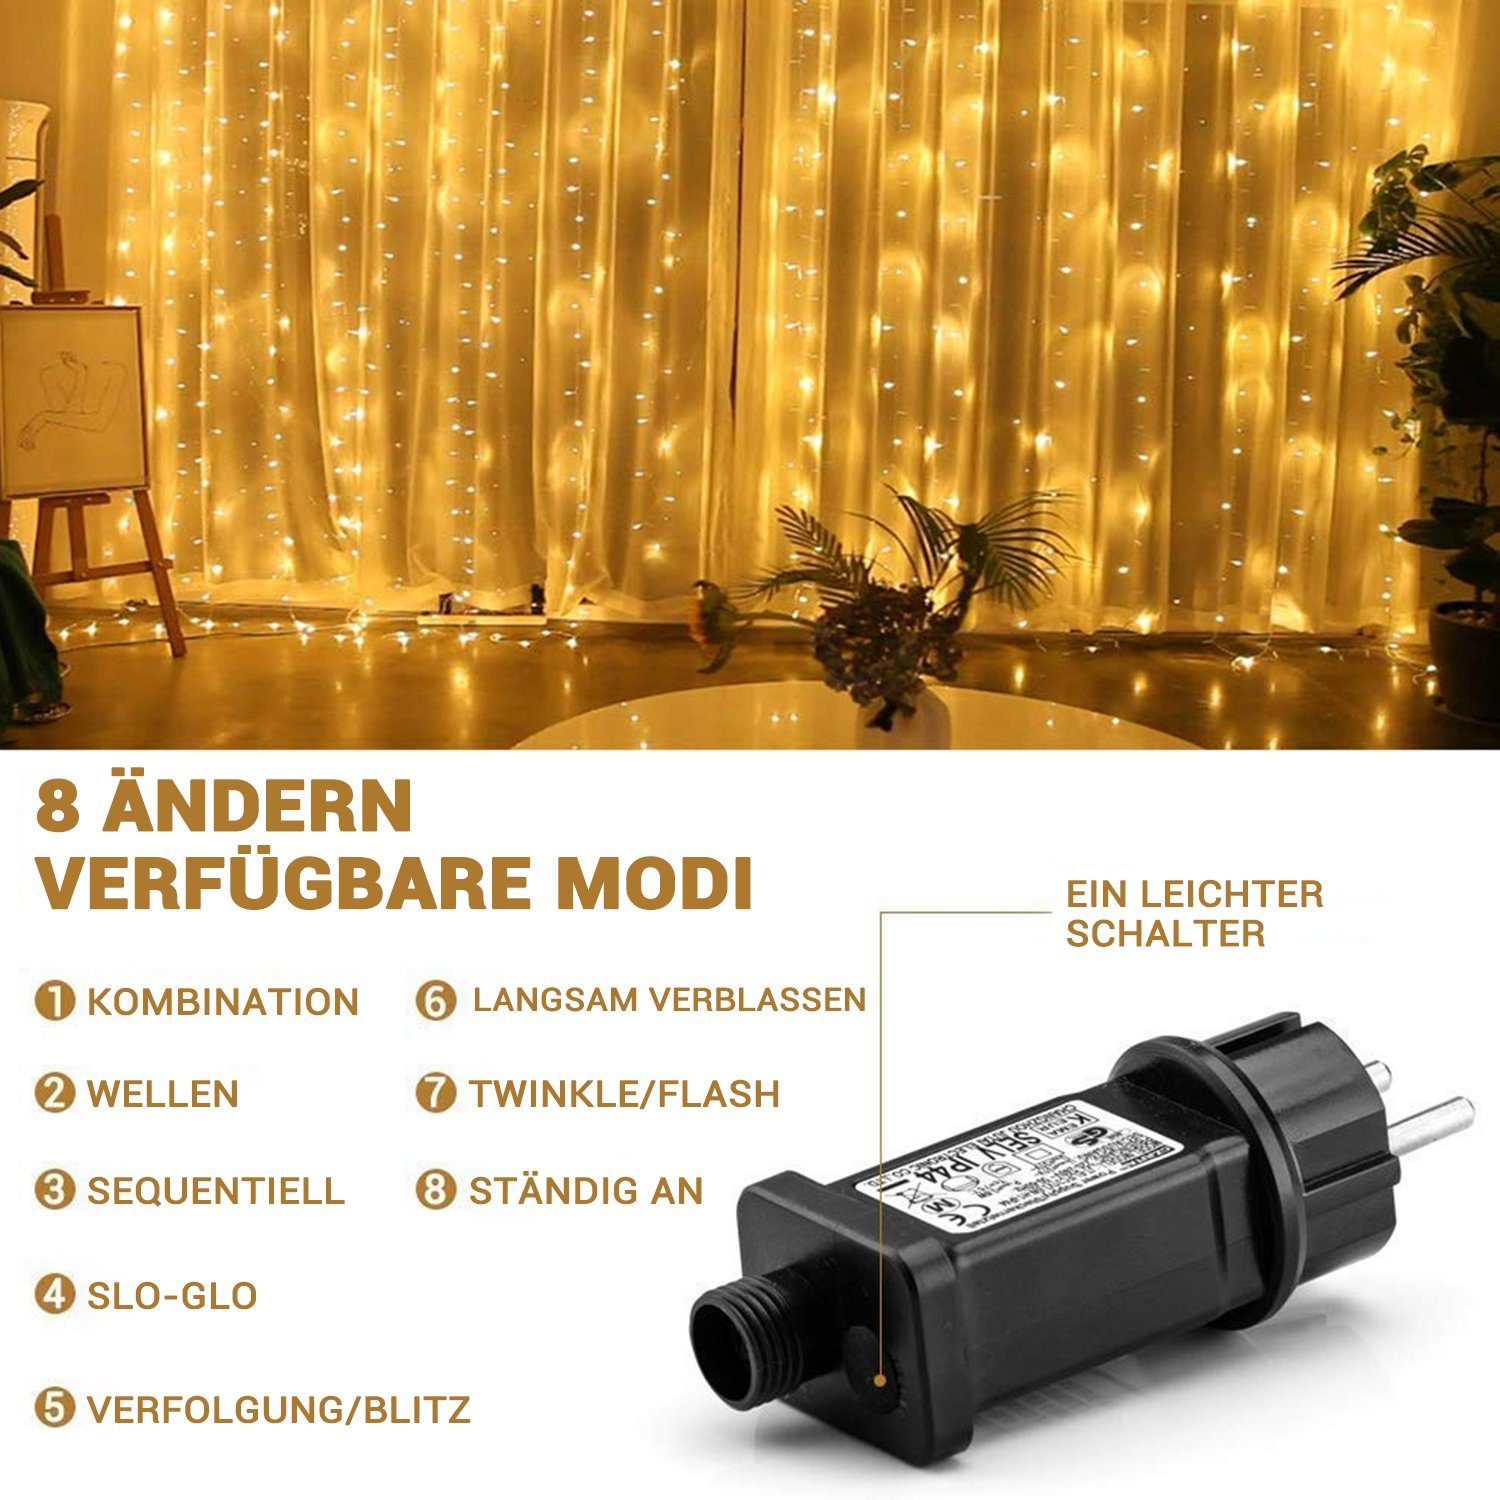 Elegear LED-Lichtervorhang Lichtervorhang 8Modi für 600-flammig, LED Weihnachtsdeko, Lichterkette fenster, Timer/Memory-Funktion Weihnachtsbäume